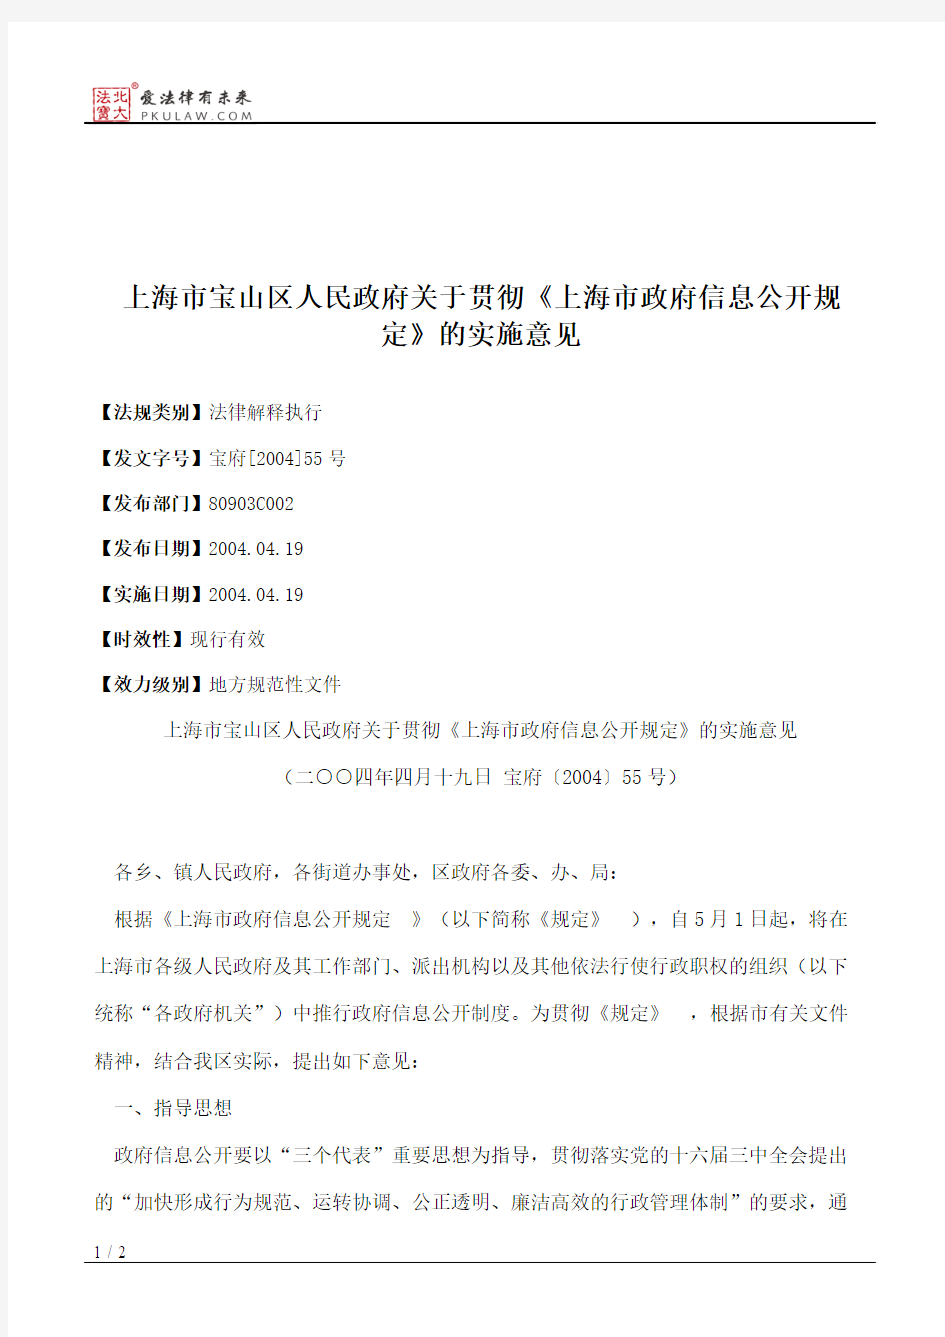 上海市宝山区人民政府关于贯彻《上海市政府信息公开规定》的实施意见